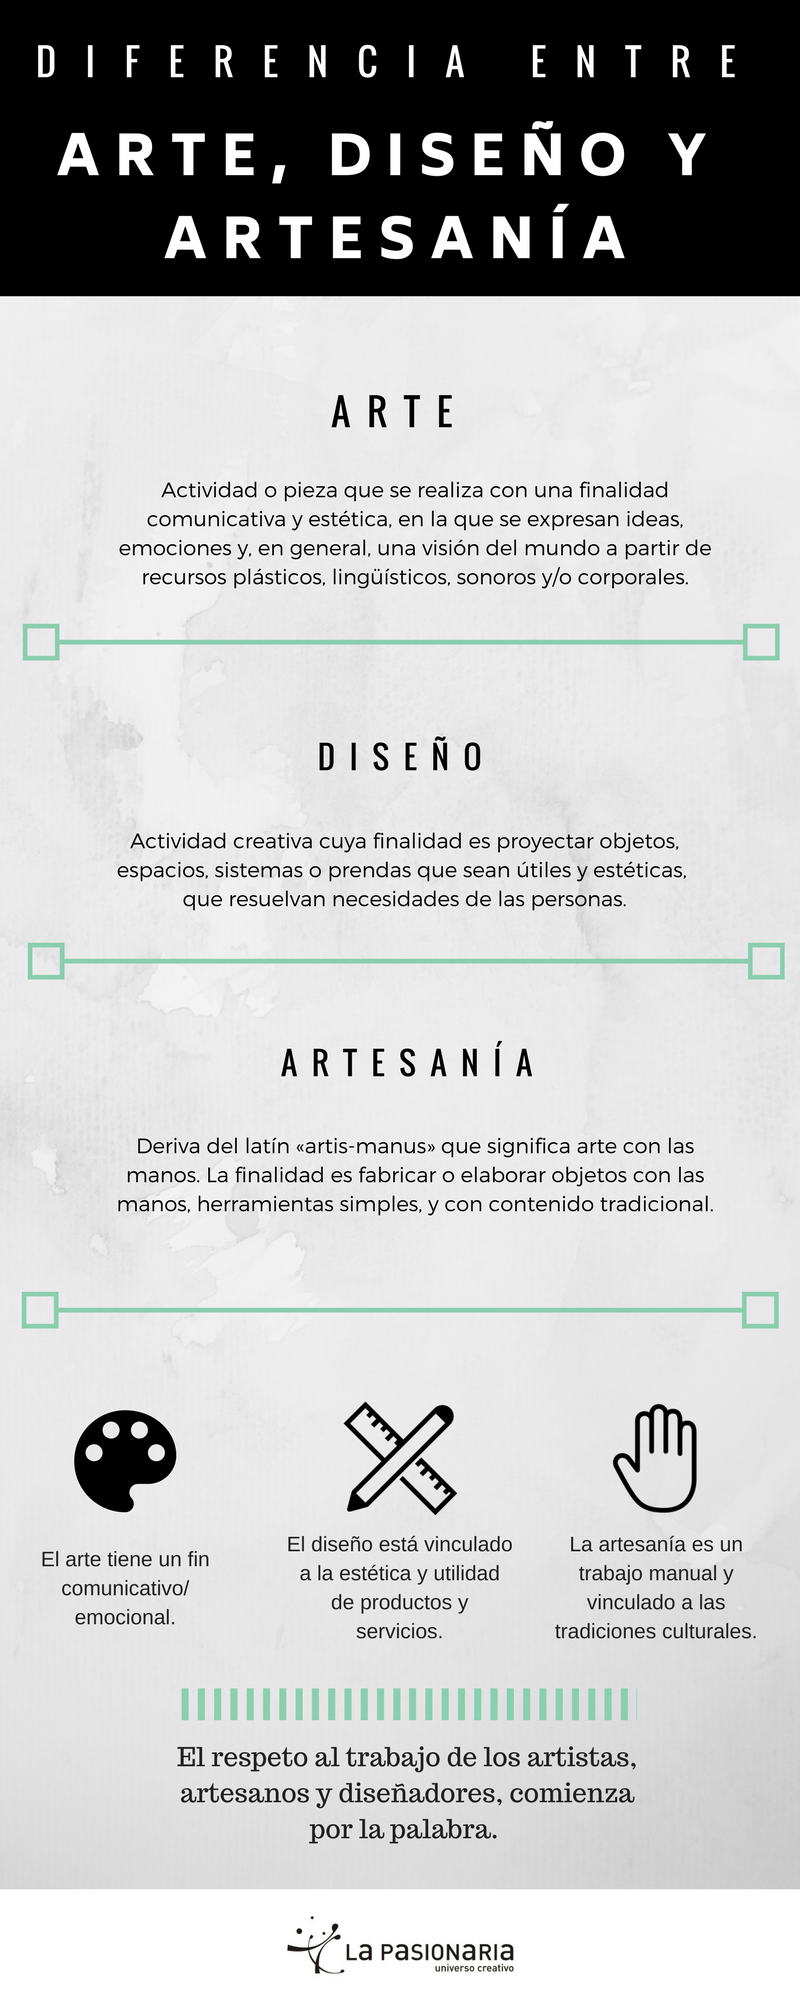 Cuál es la diferencia entre Arte, Diseño y Artesanía? | by La Pasionaria  Uruguay | Medium